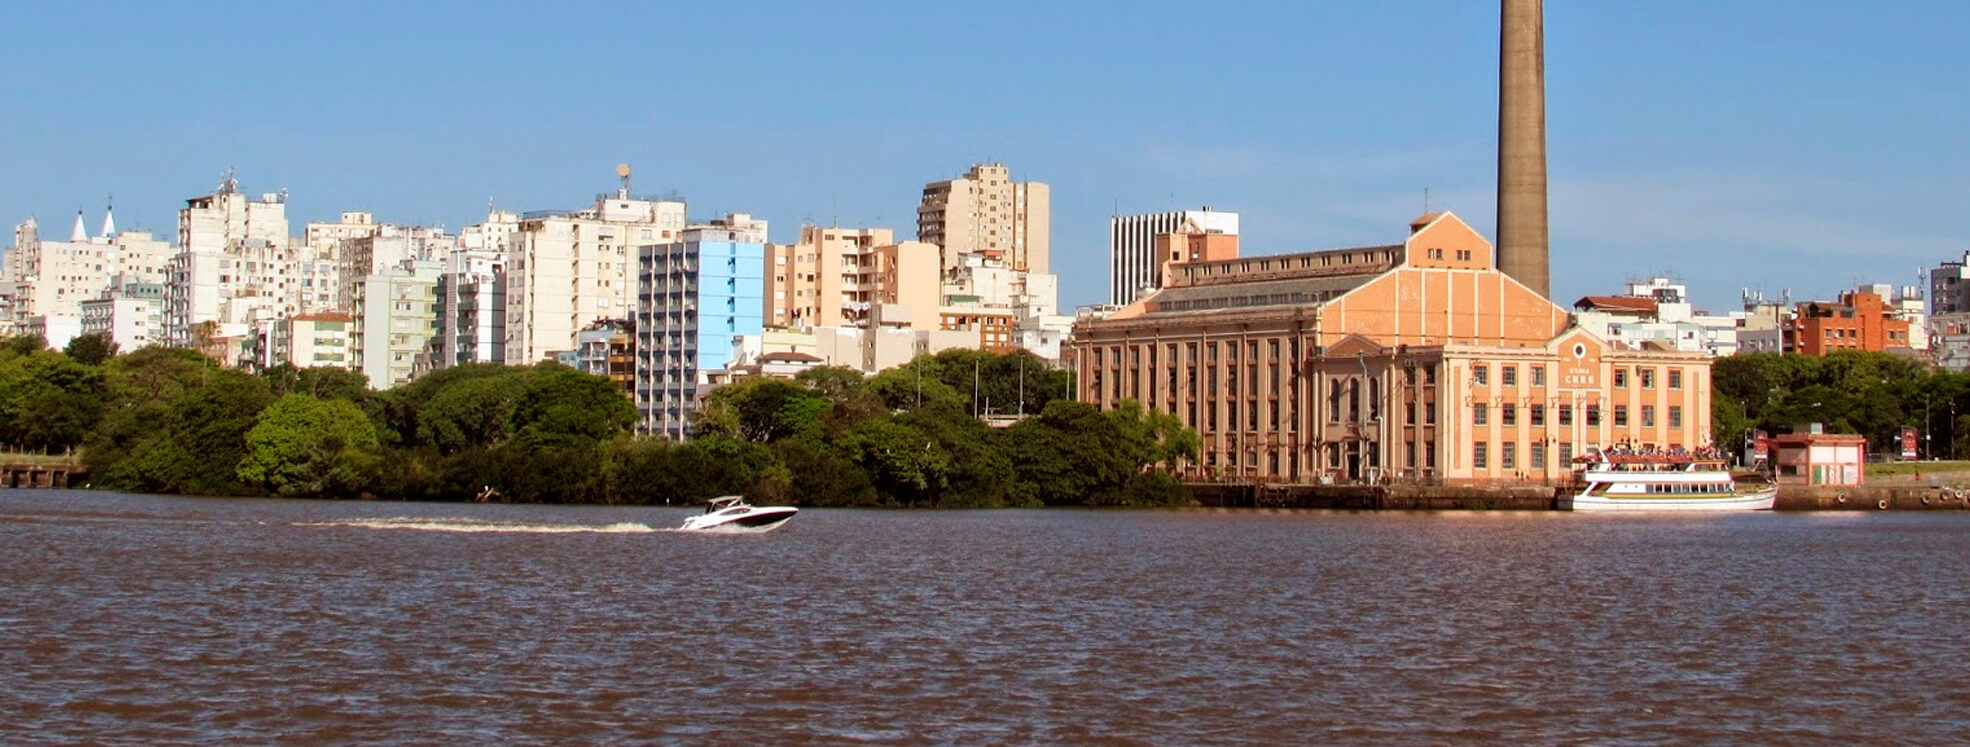 Habitacional Imóveis - Sua Imobiliária em Porto Alegre